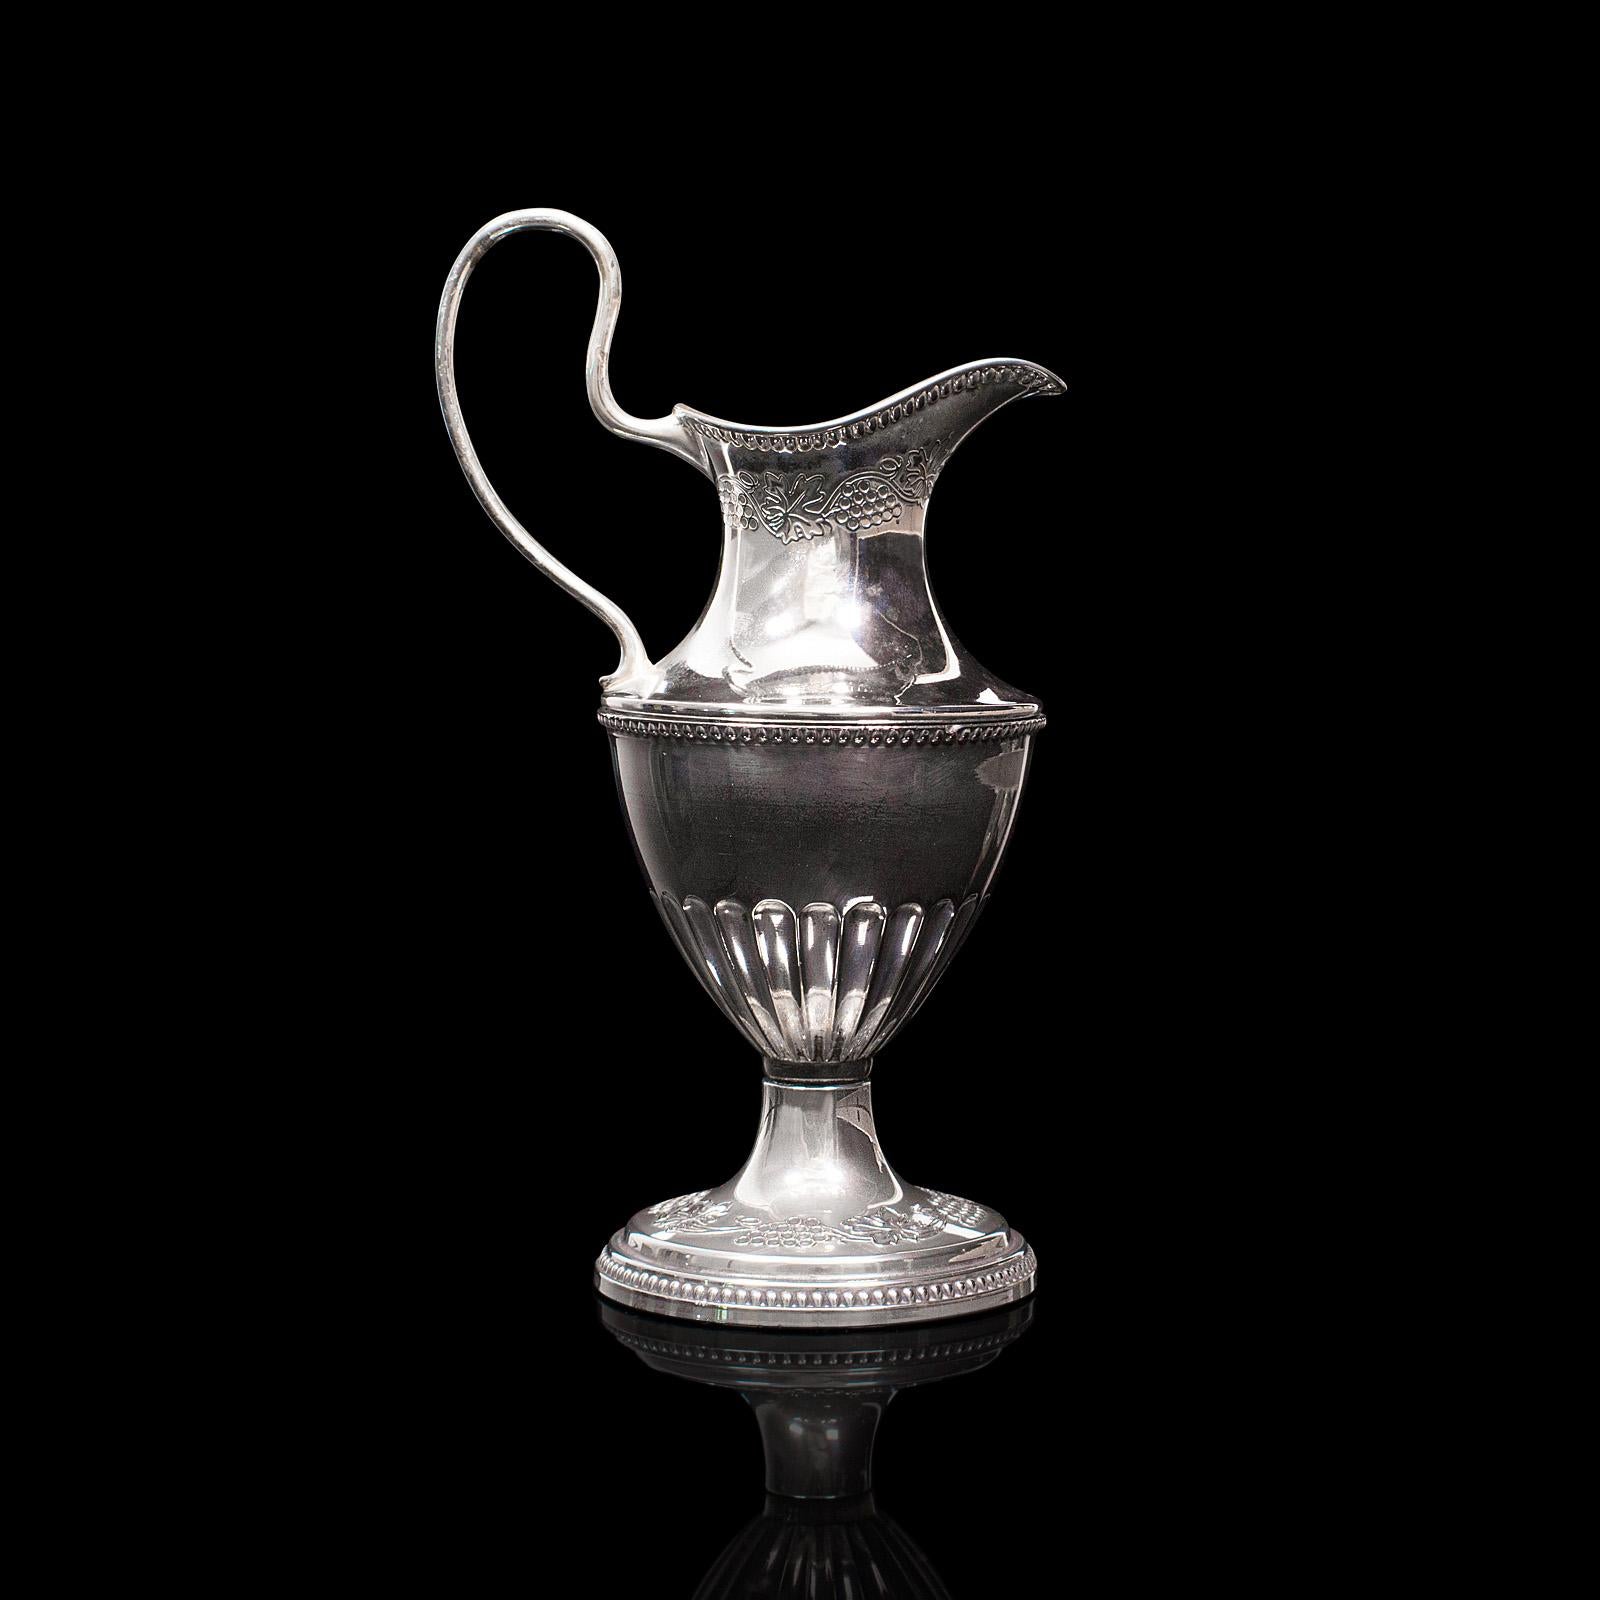 Il s'agit d'une petite cruche à verser ancienne. Un vase décoratif anglais en métal argenté, datant de la période édouardienne, vers 1910.

De forme délicieusement petite
Affiche une patine vieillie souhaitable avec une légère ternissure